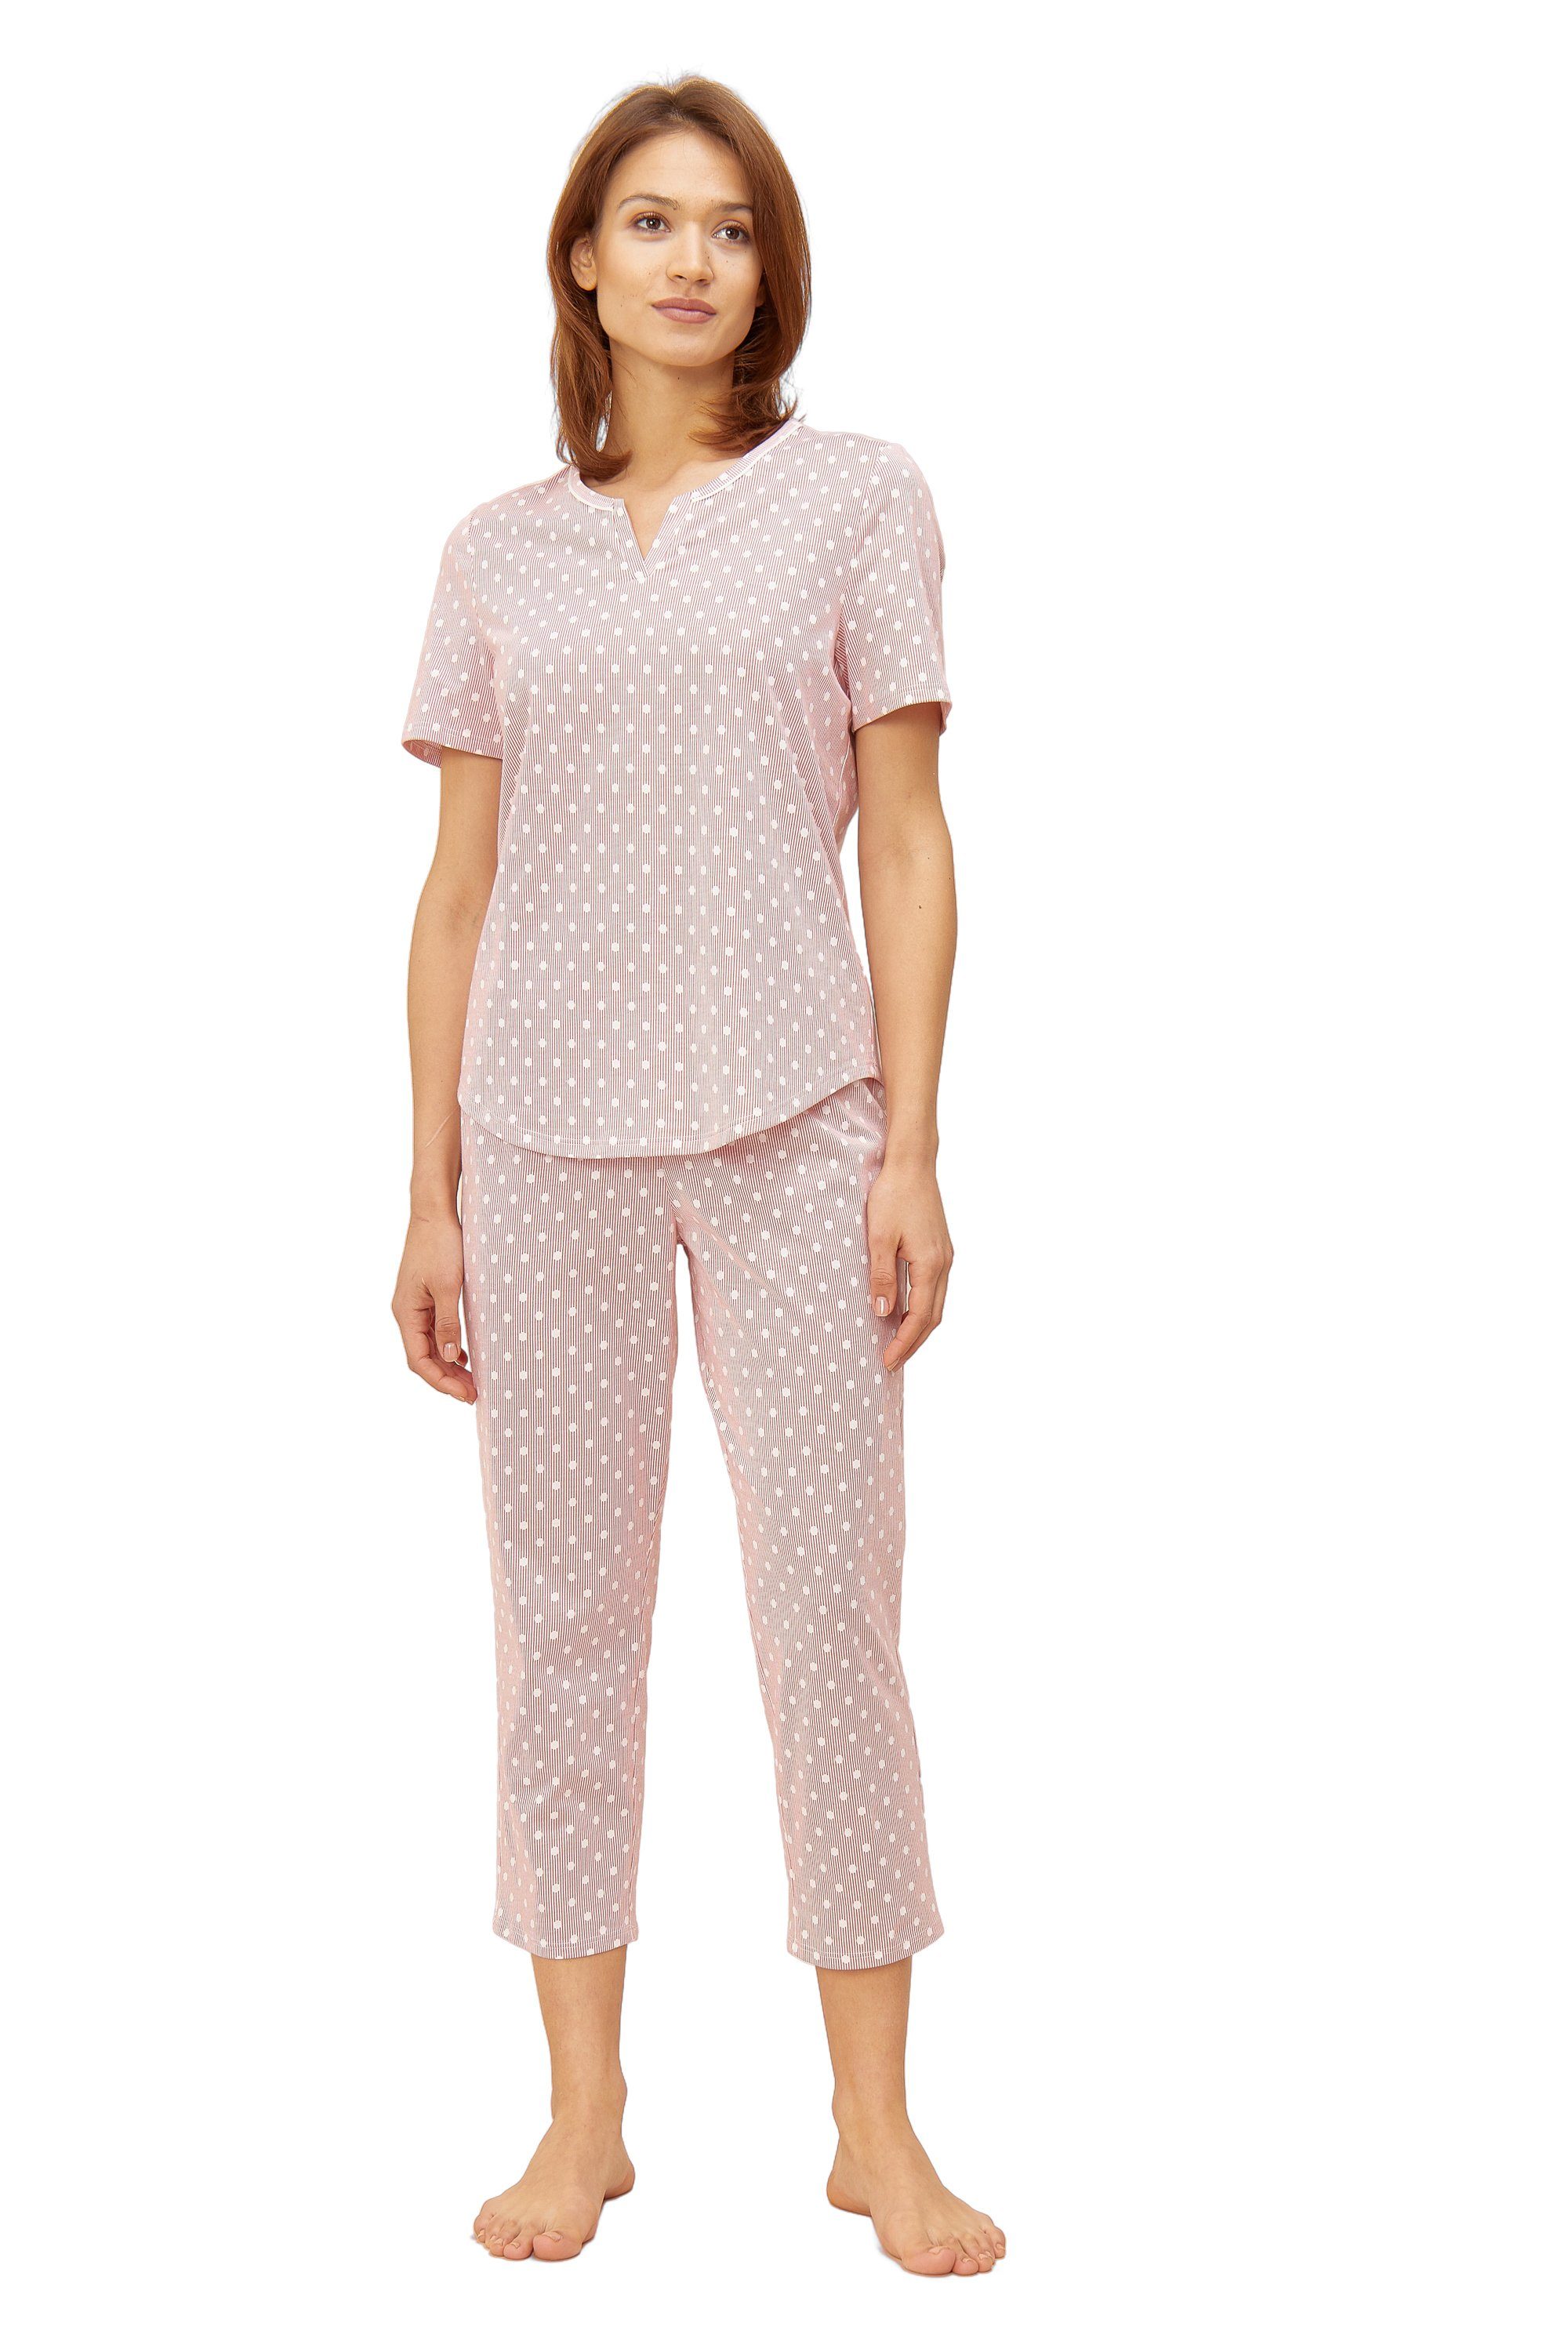 Rösch Pyjama 1884144 rosa gepunktet